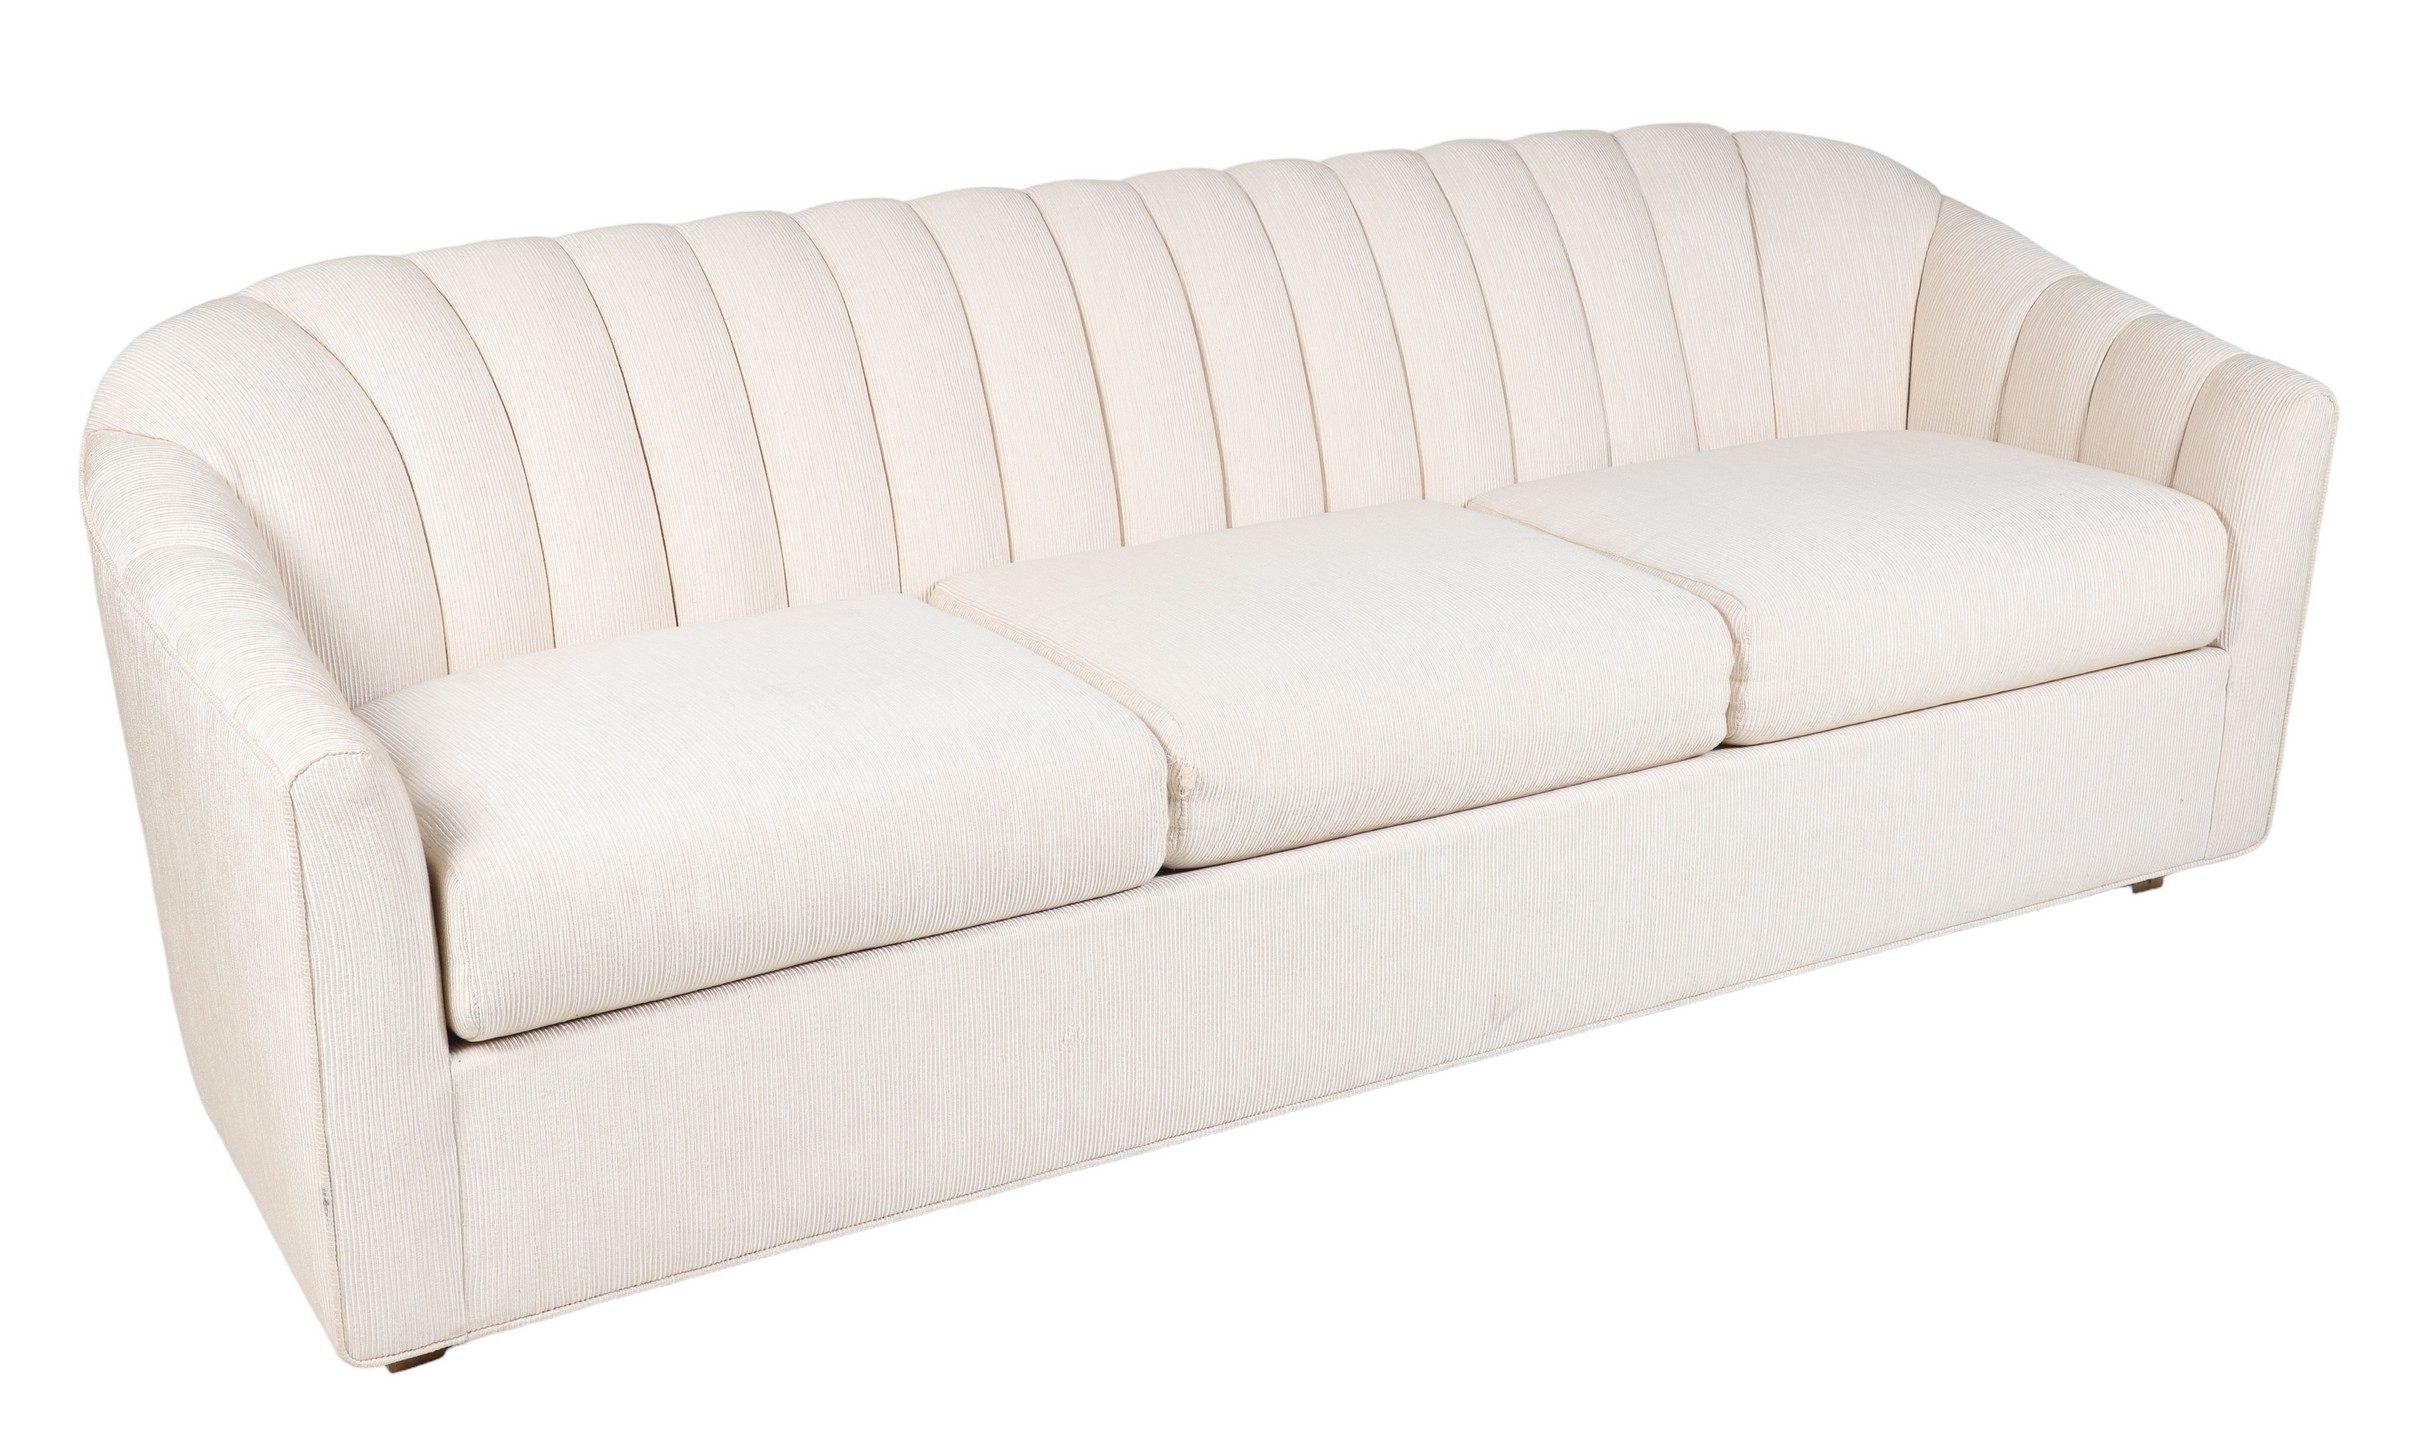 Dunbar style Modern Design sofa  2e16c1